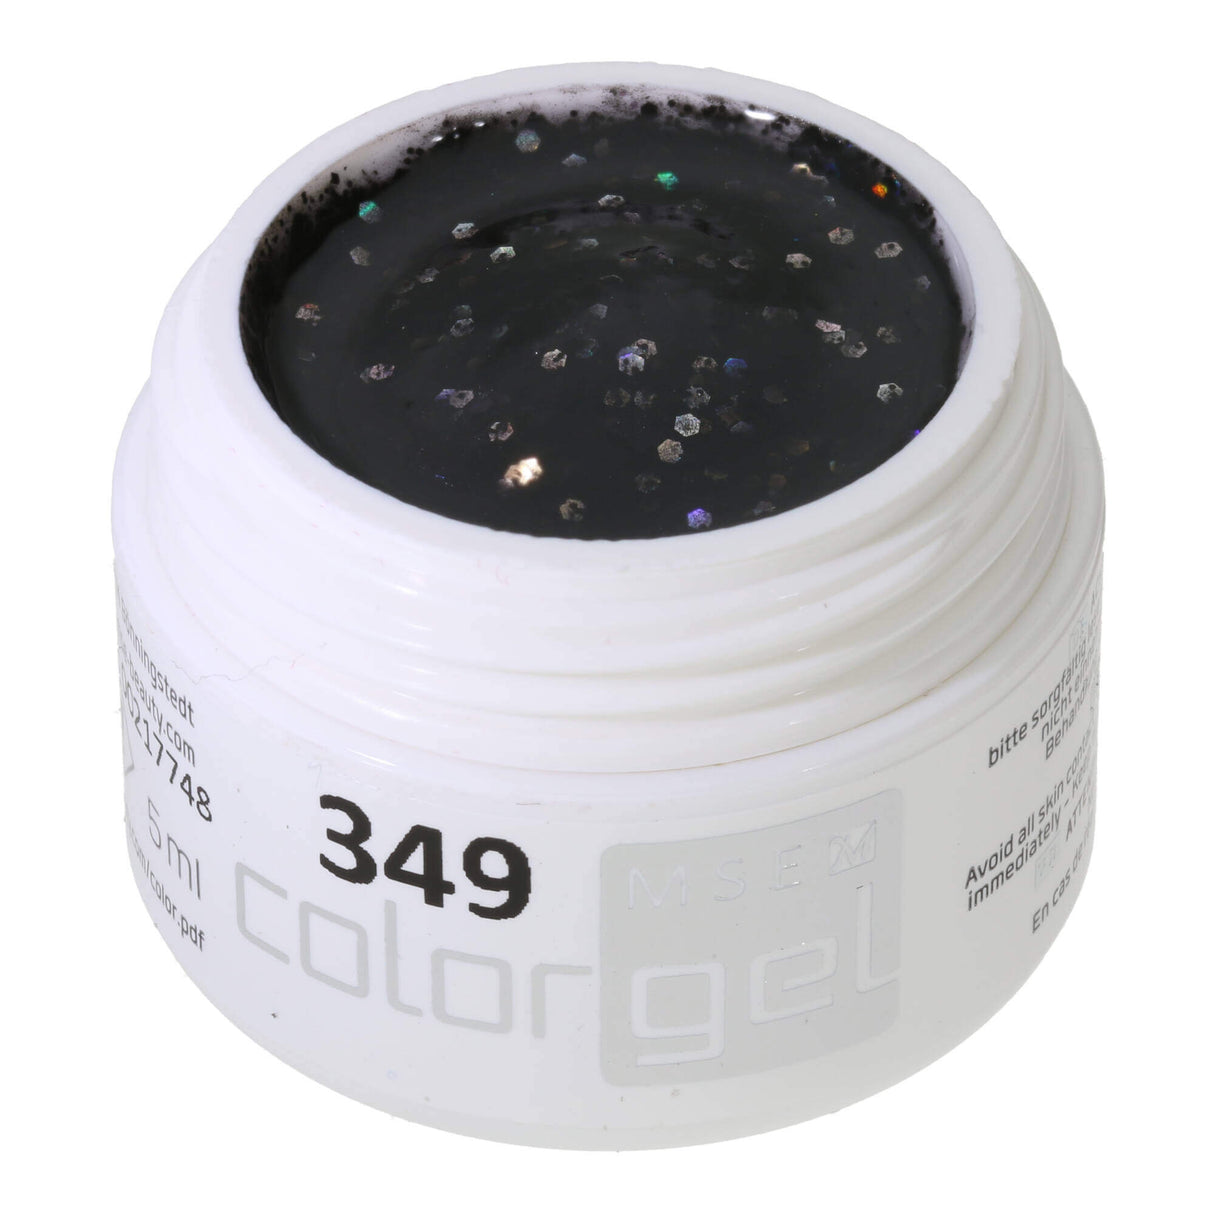 # 349 Premium-GLITTER Color Gel 5ml Hỗn hợp màu đen và bạc lấp lánh với hiệu ứng cầu vồng